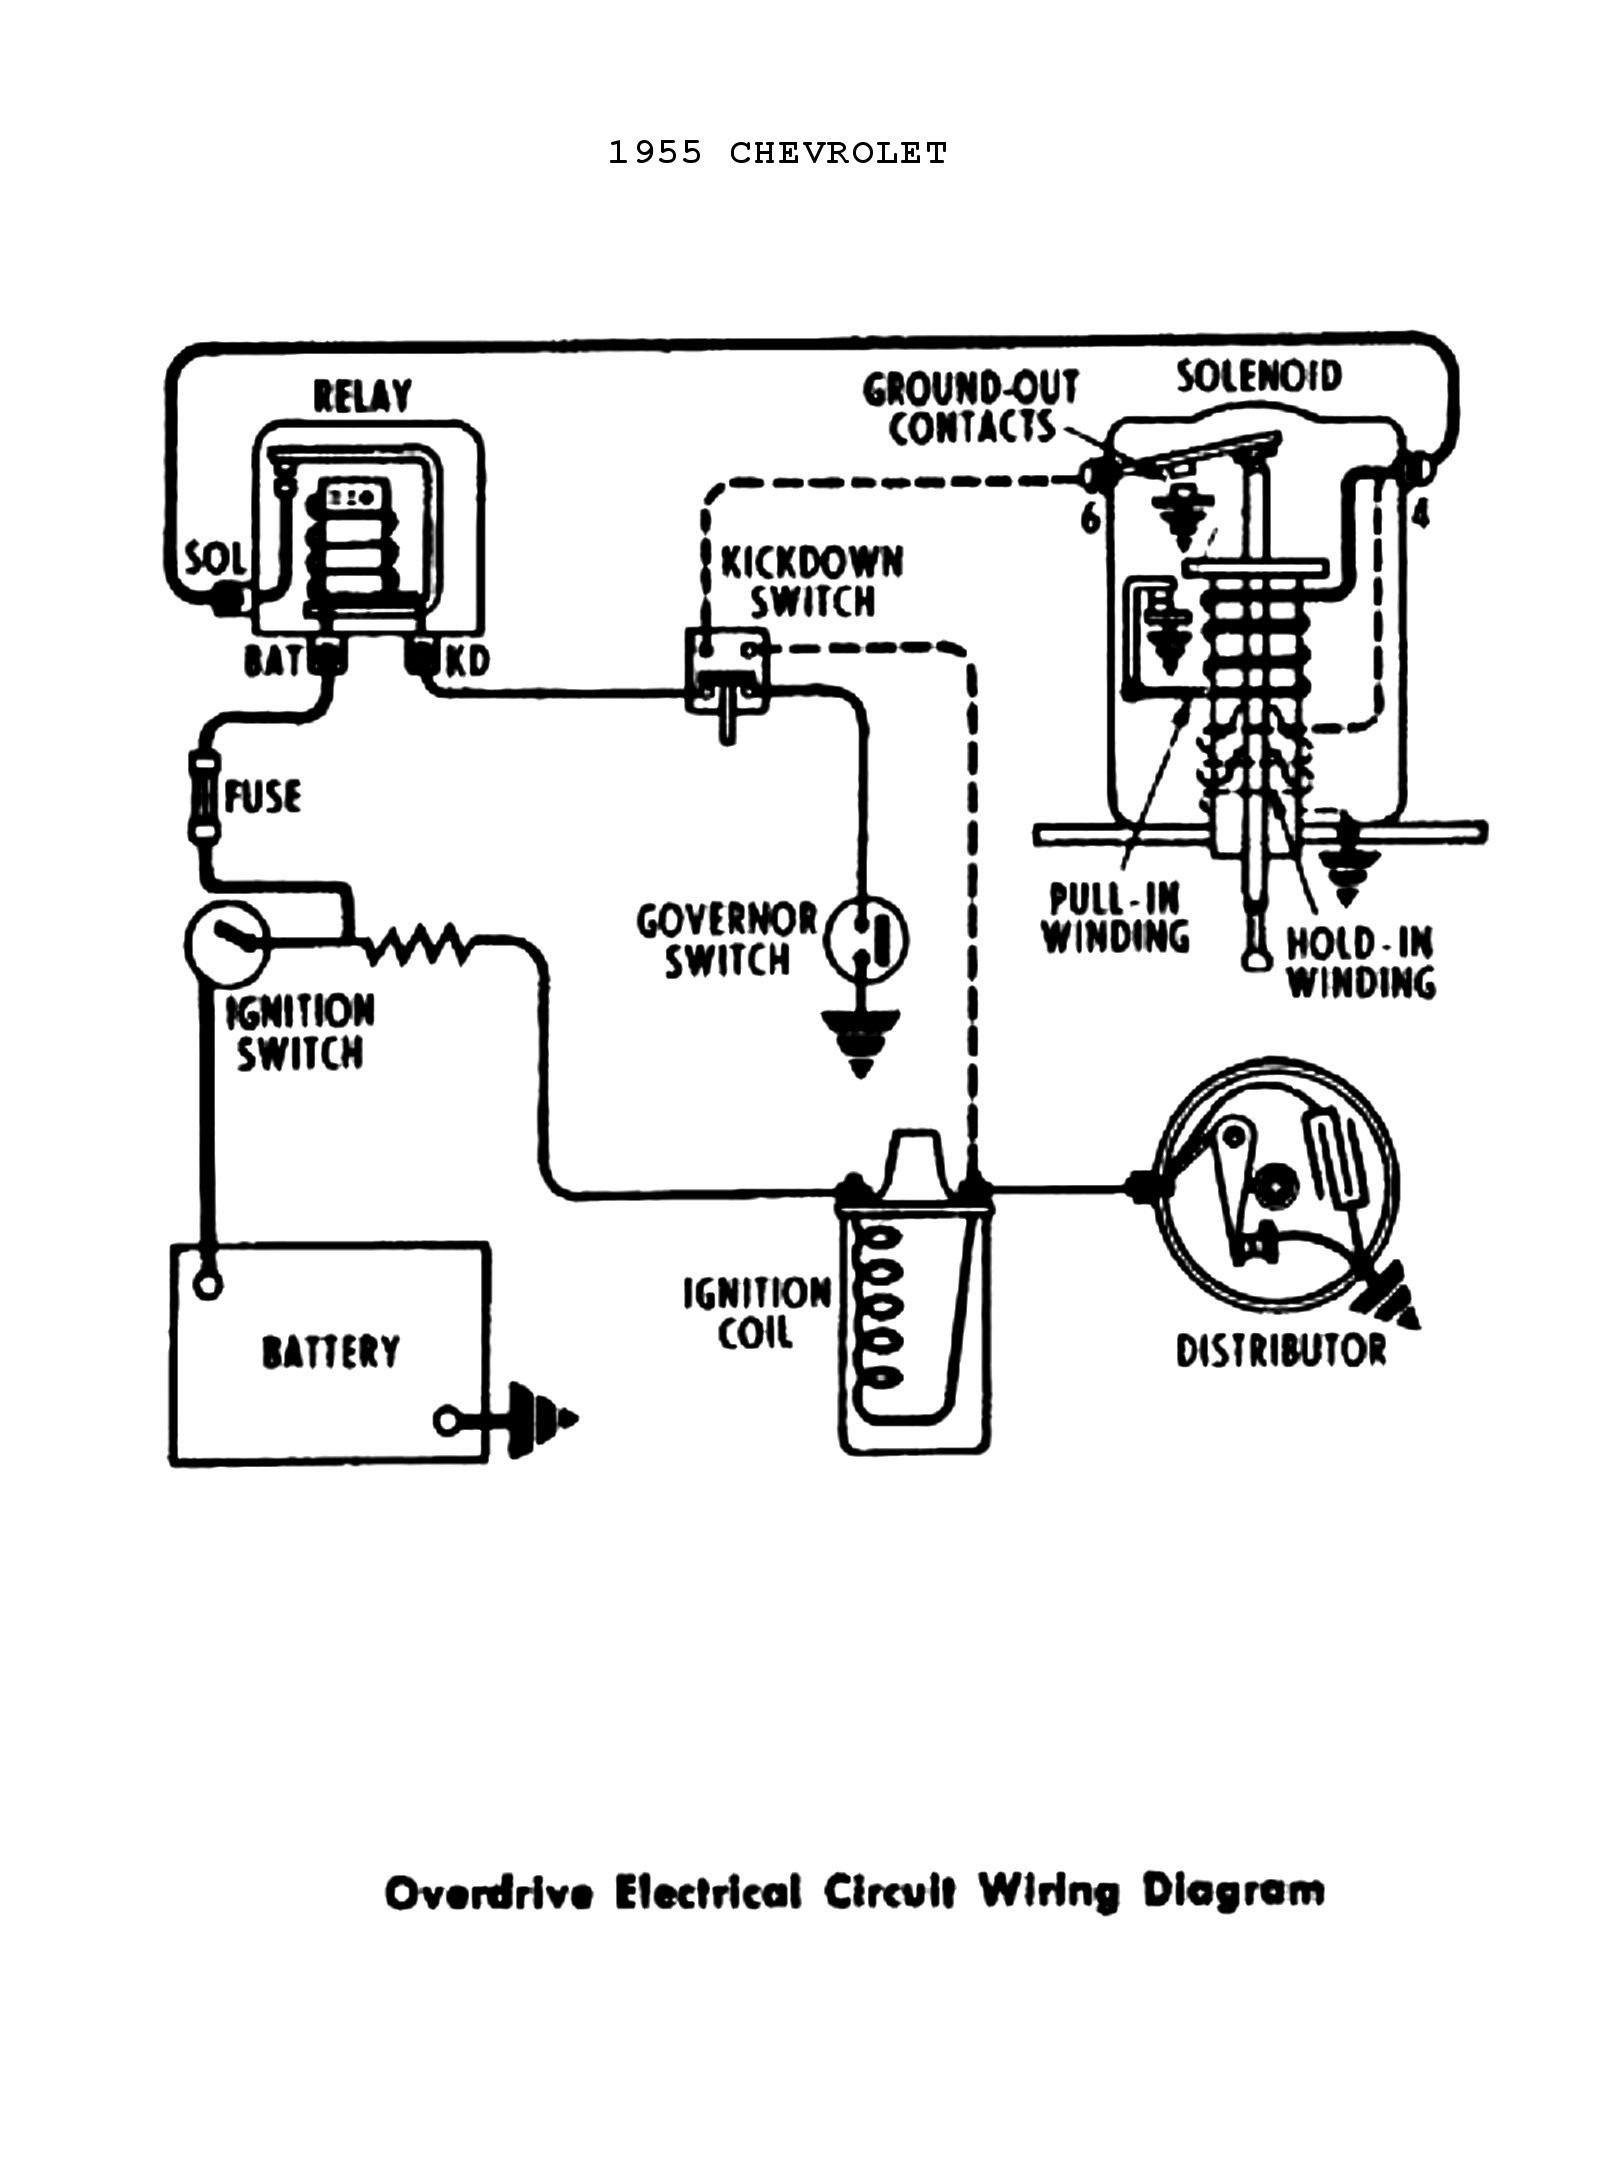 Circuit Wiring Diagram